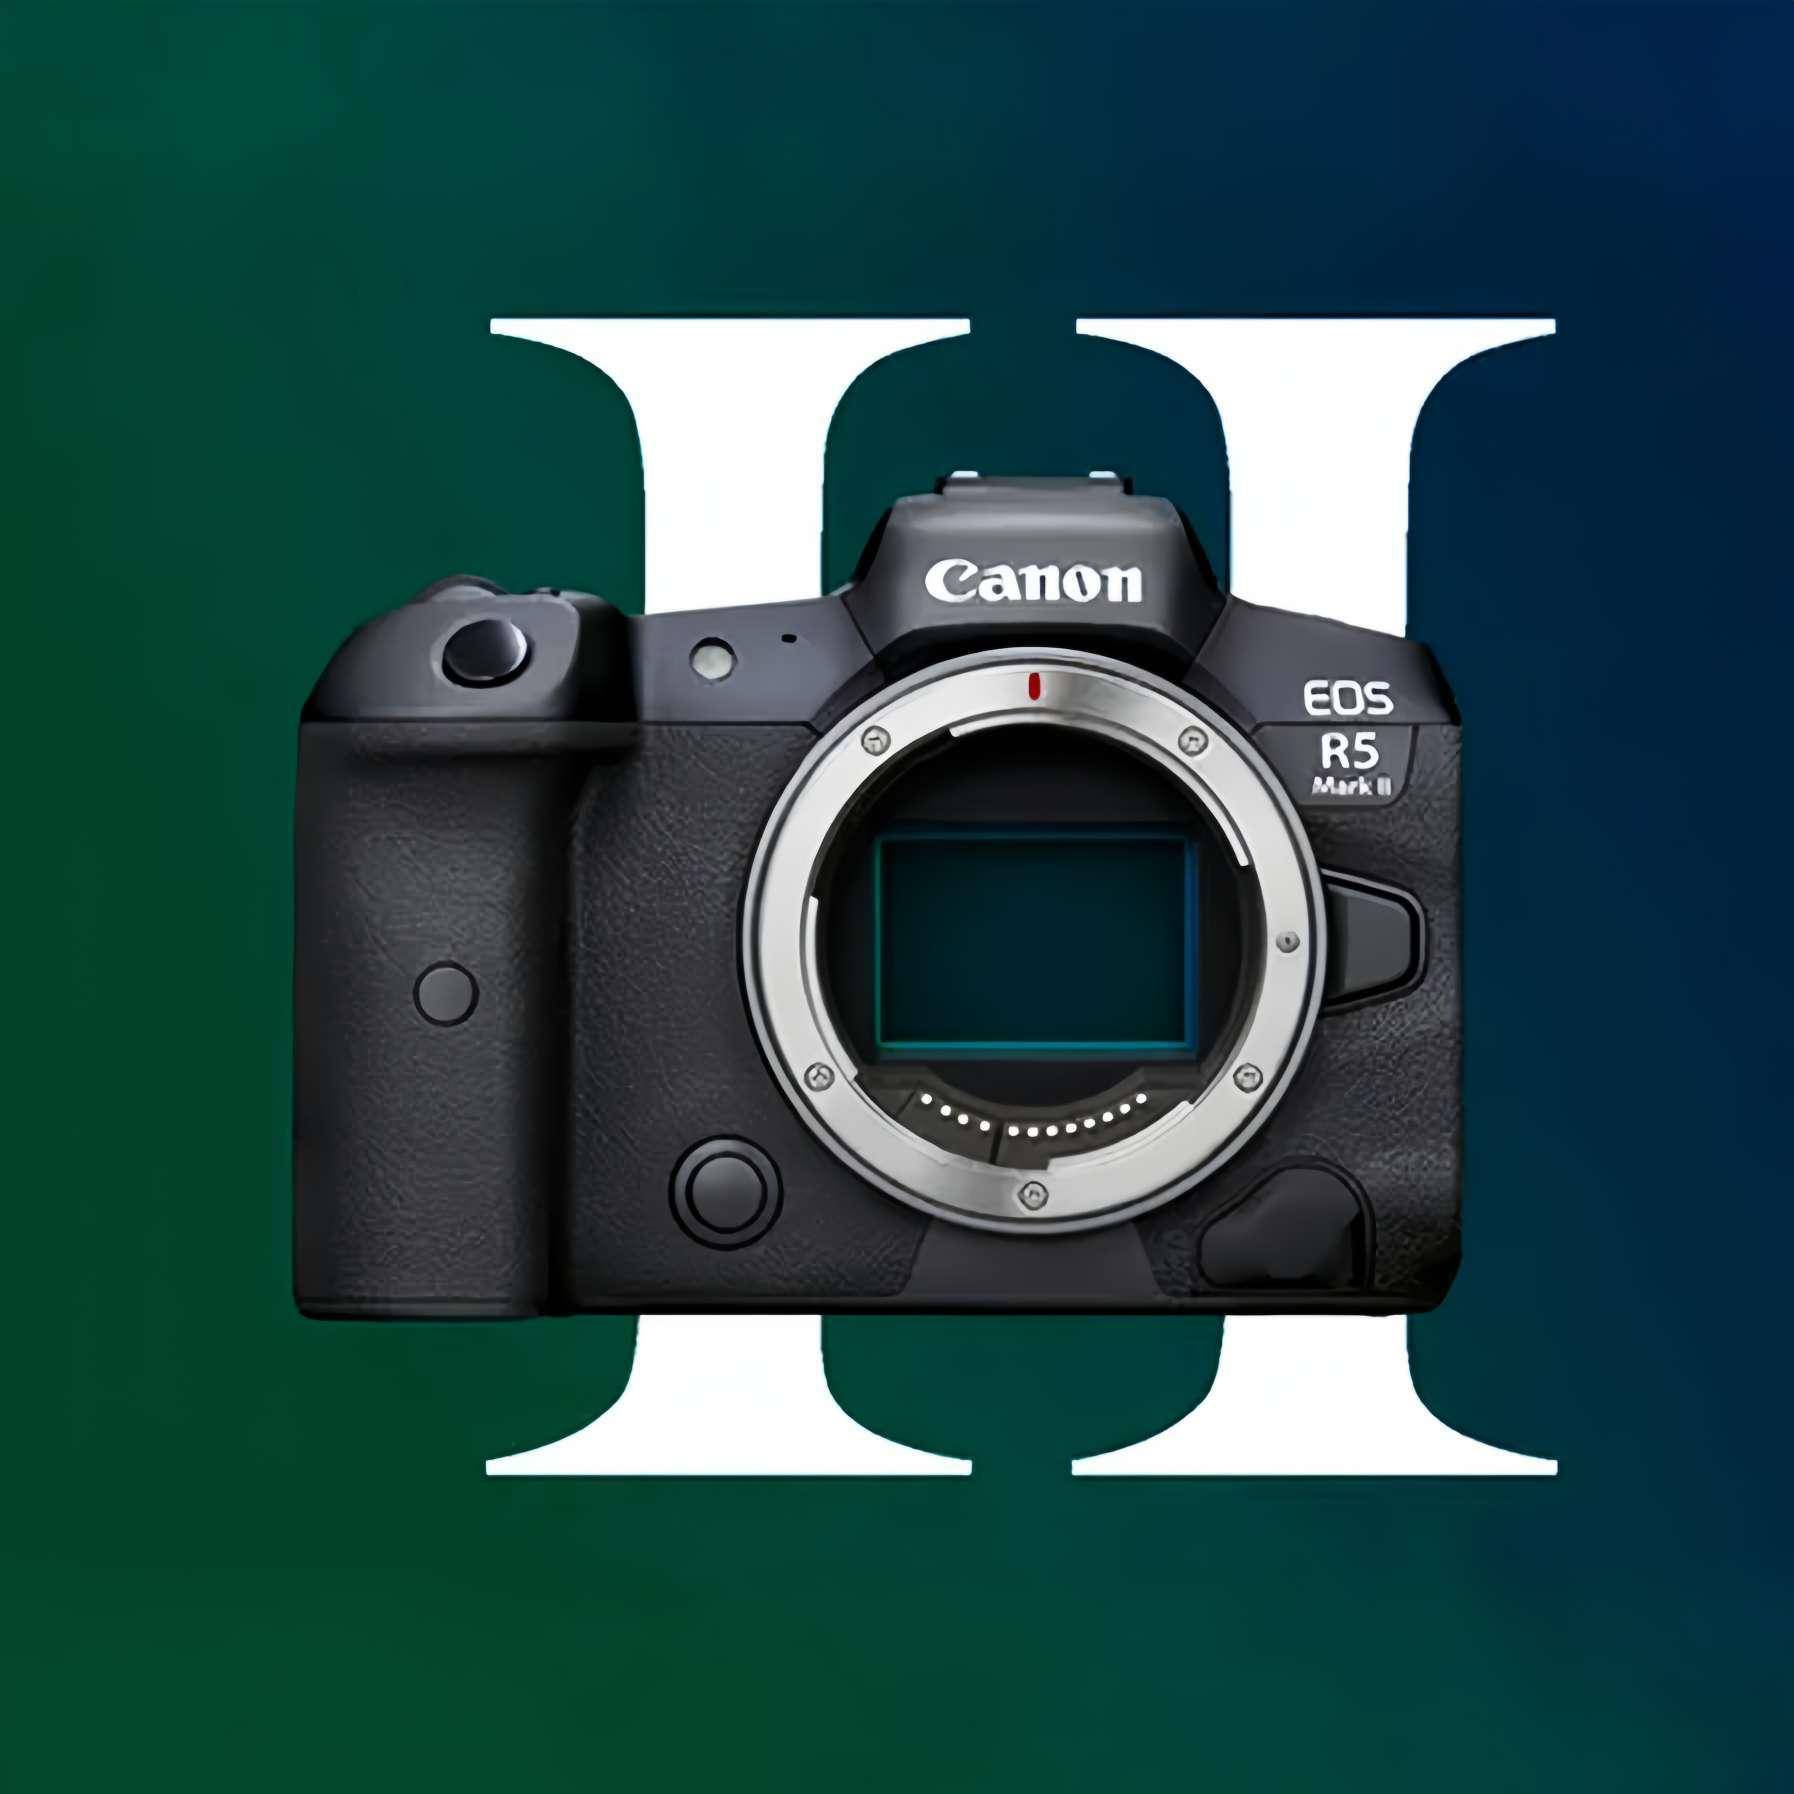 佳能EOS R5 Mark II相机规格曝光 拥有最高8档防抖效果